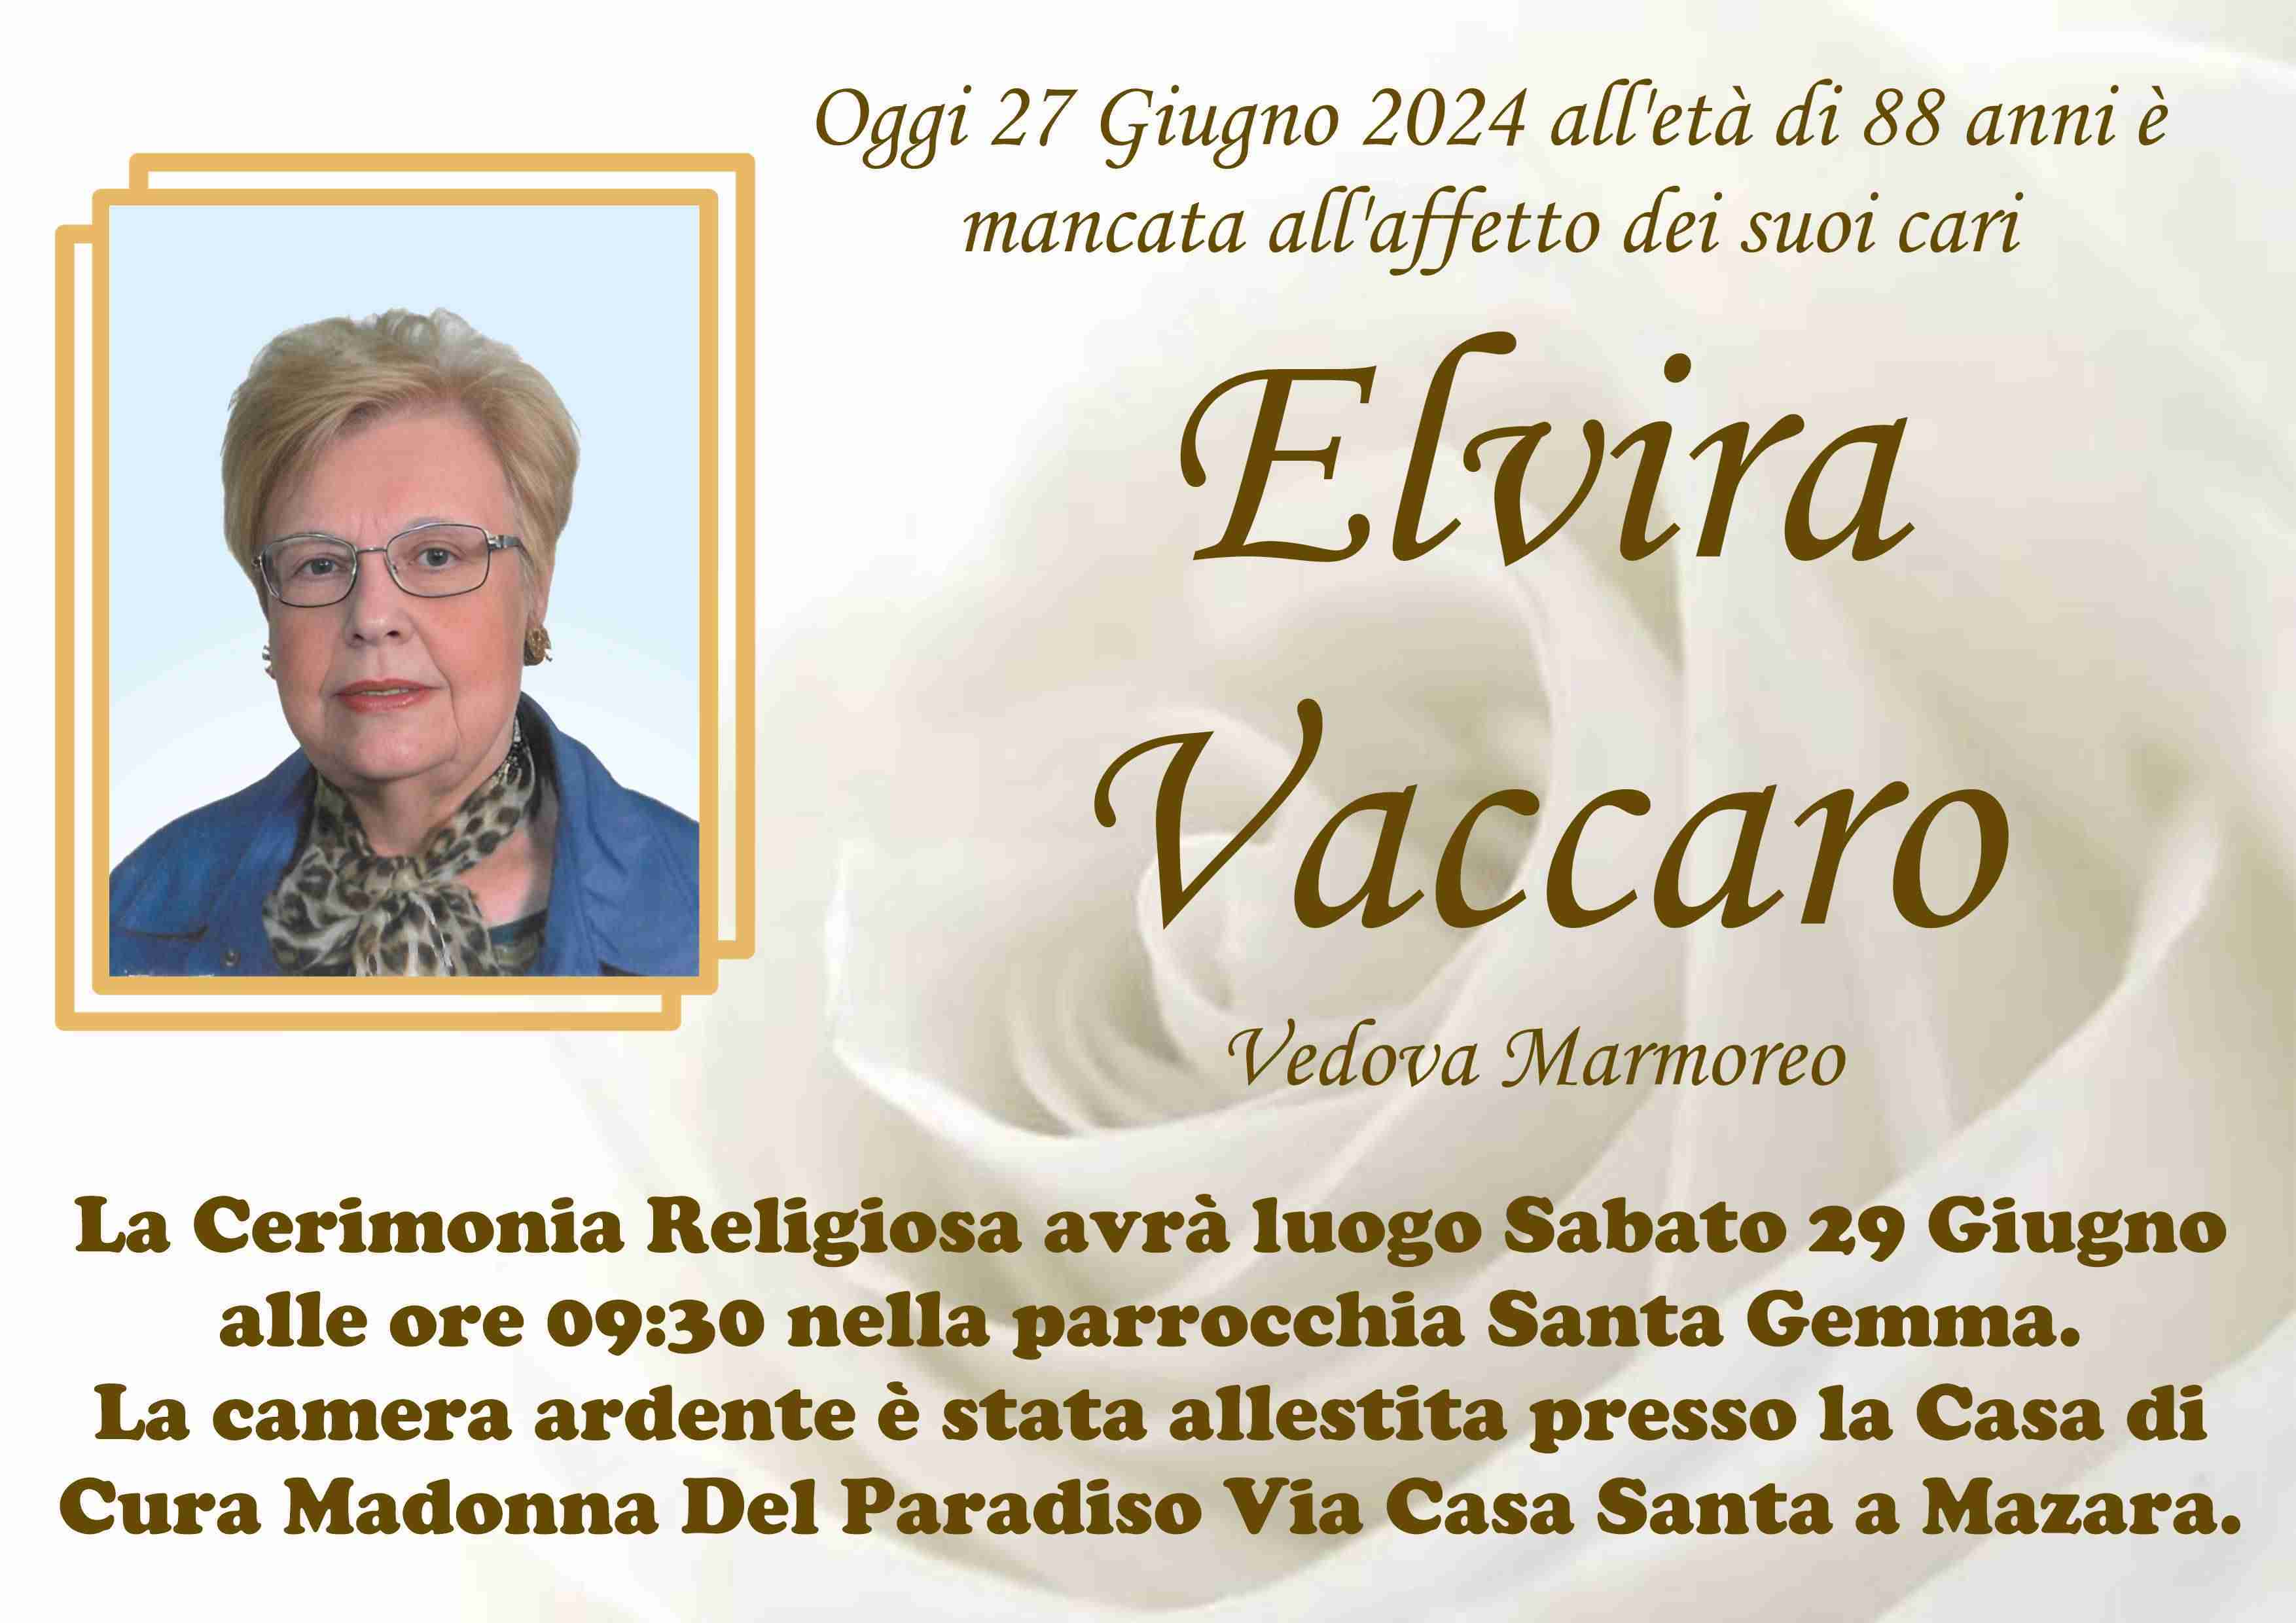 Elvira Vaccaro